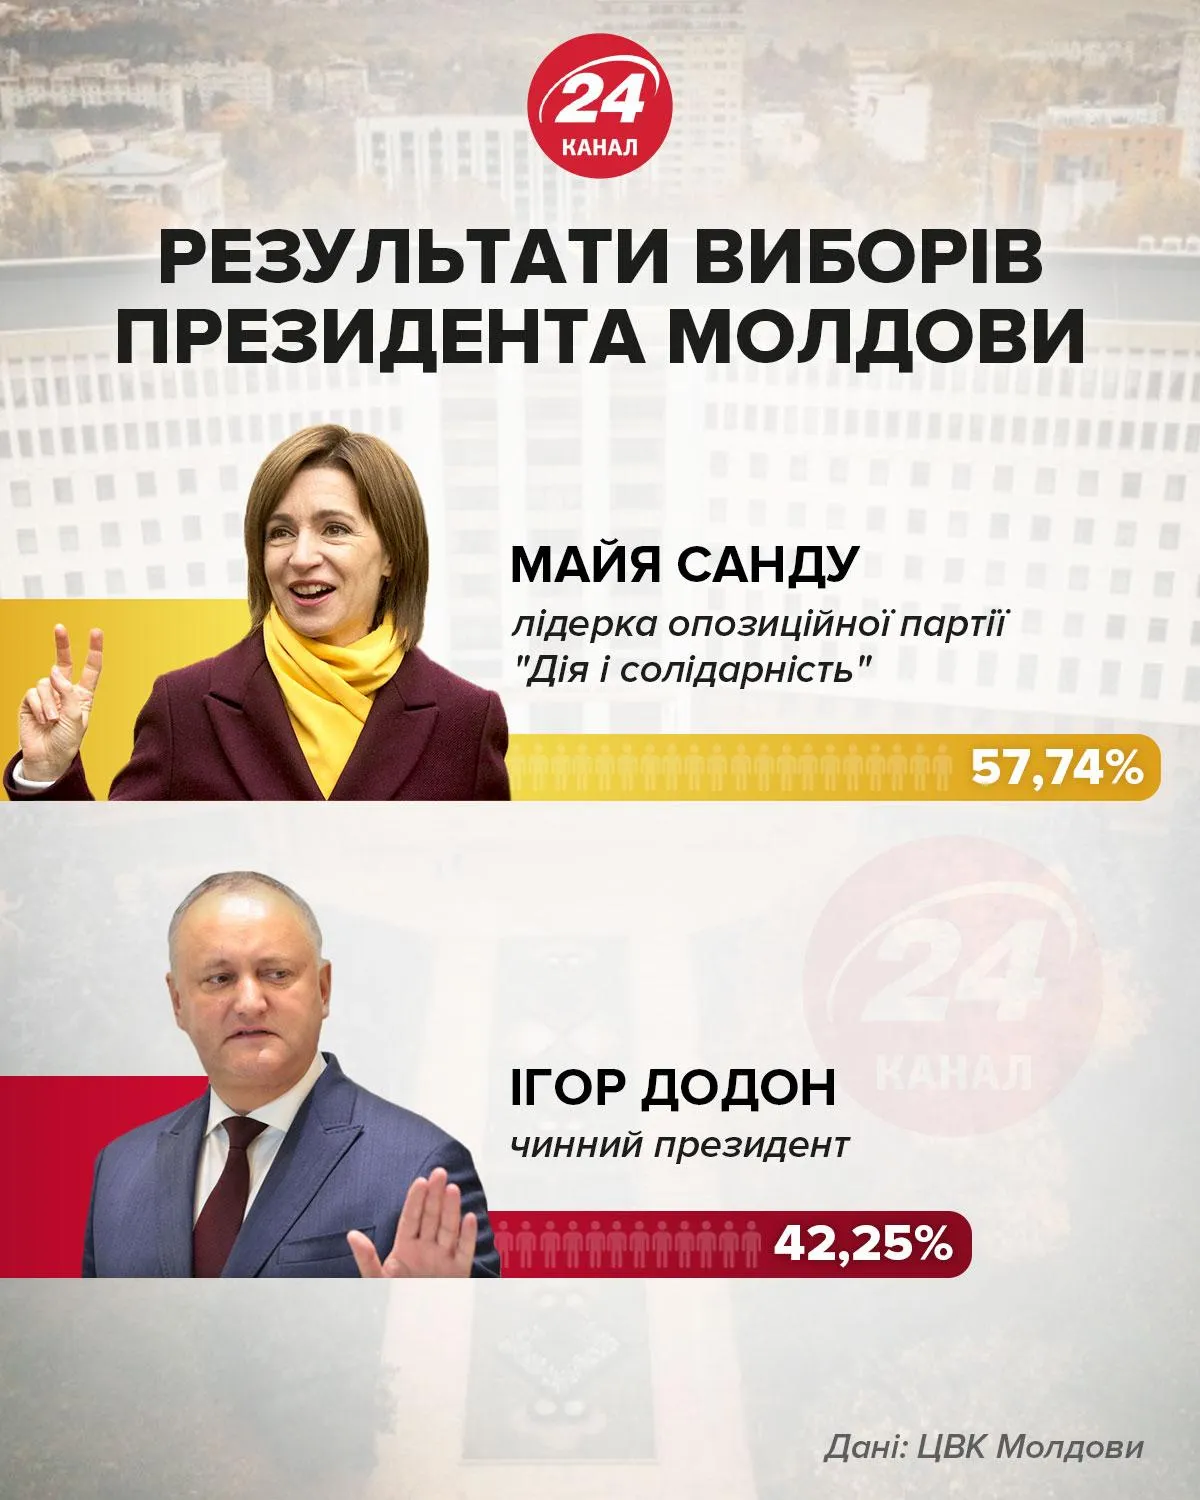 Вибори президента Молдови інфографіка 24 канал